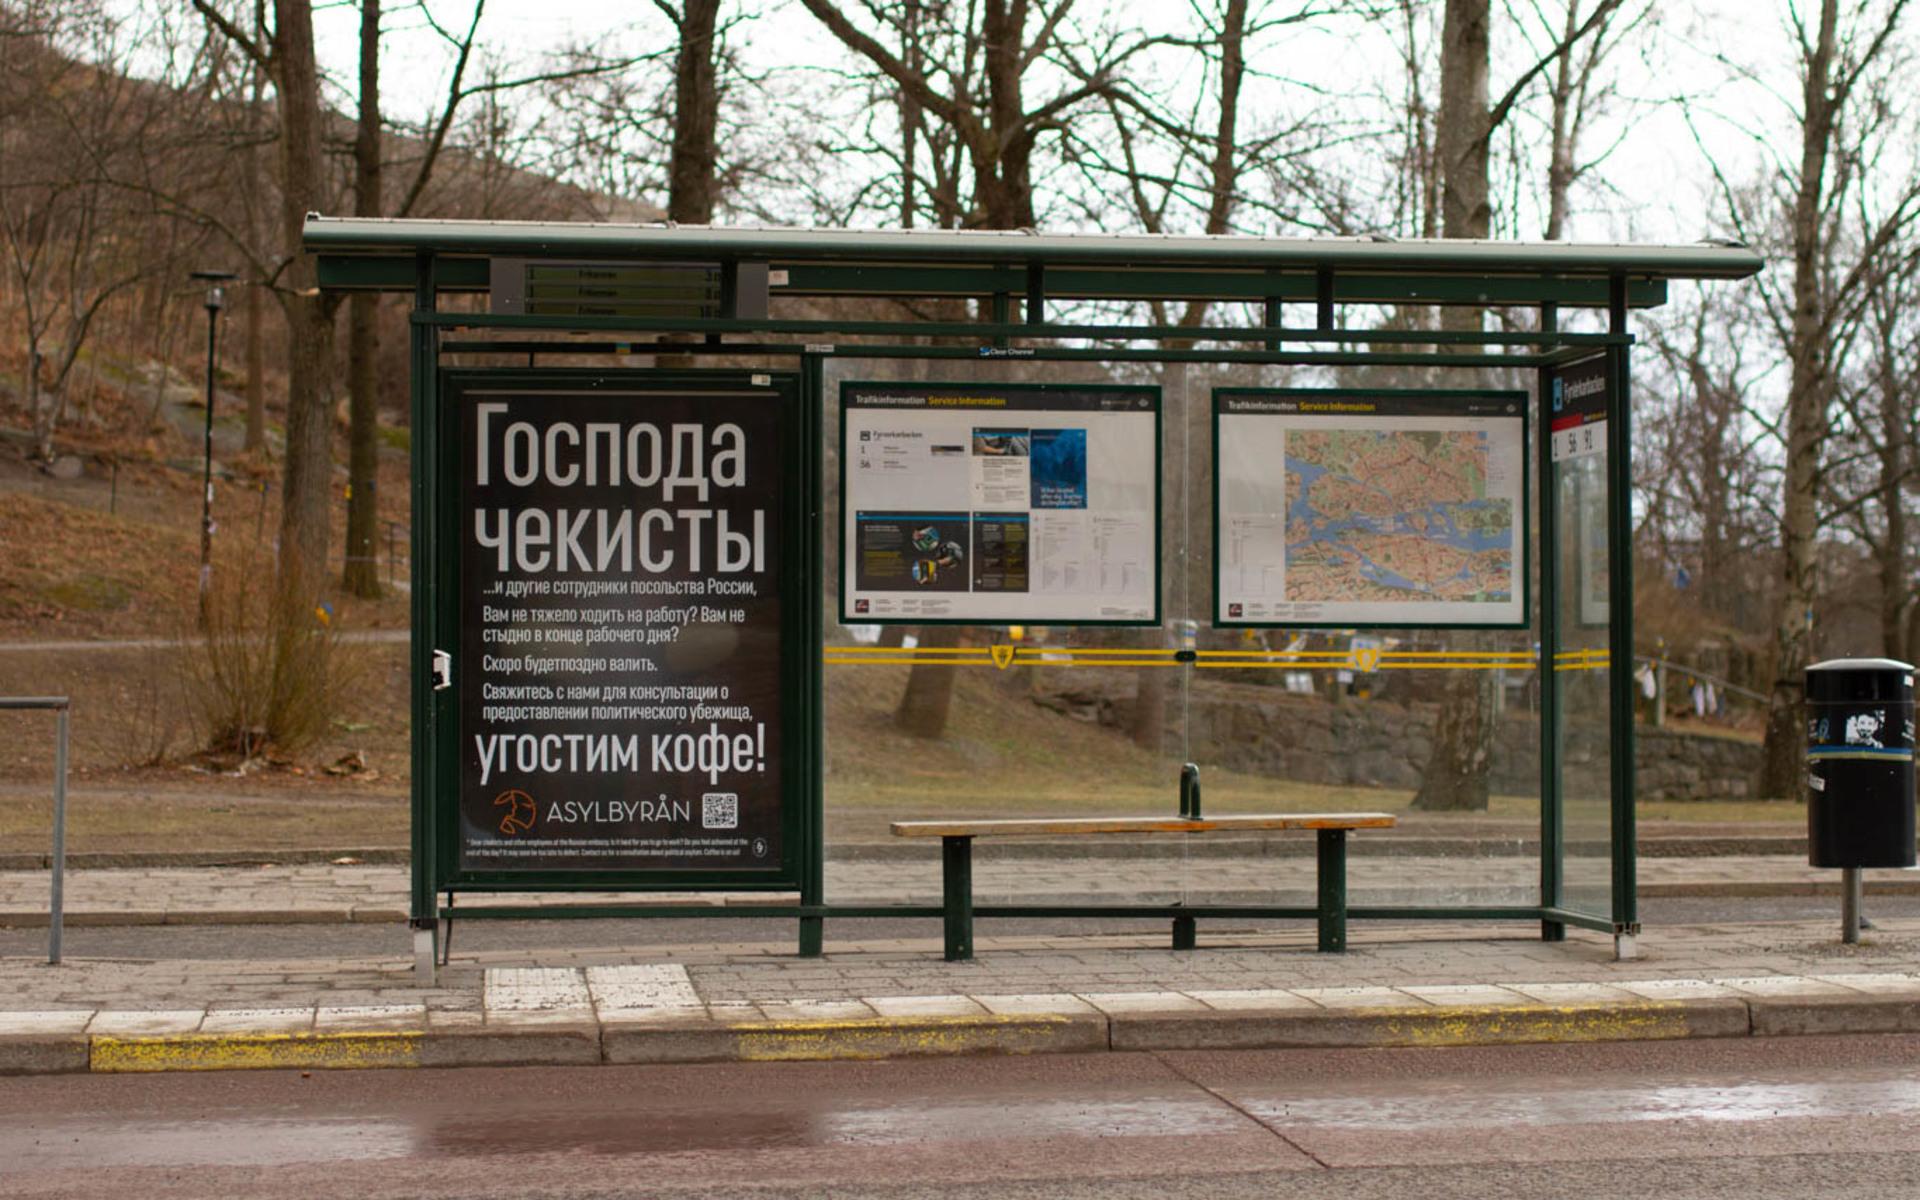 I slutet av mars satte advokatfirman Asylbyrån upp affischer på busshållplatserna runt den ryska ambassaden i Stockholm. Affischerna uppmanade anställda på ambassaden att ta kontakt med advokatfirman de ville hoppa av och söka politisk asyl i Sverige.